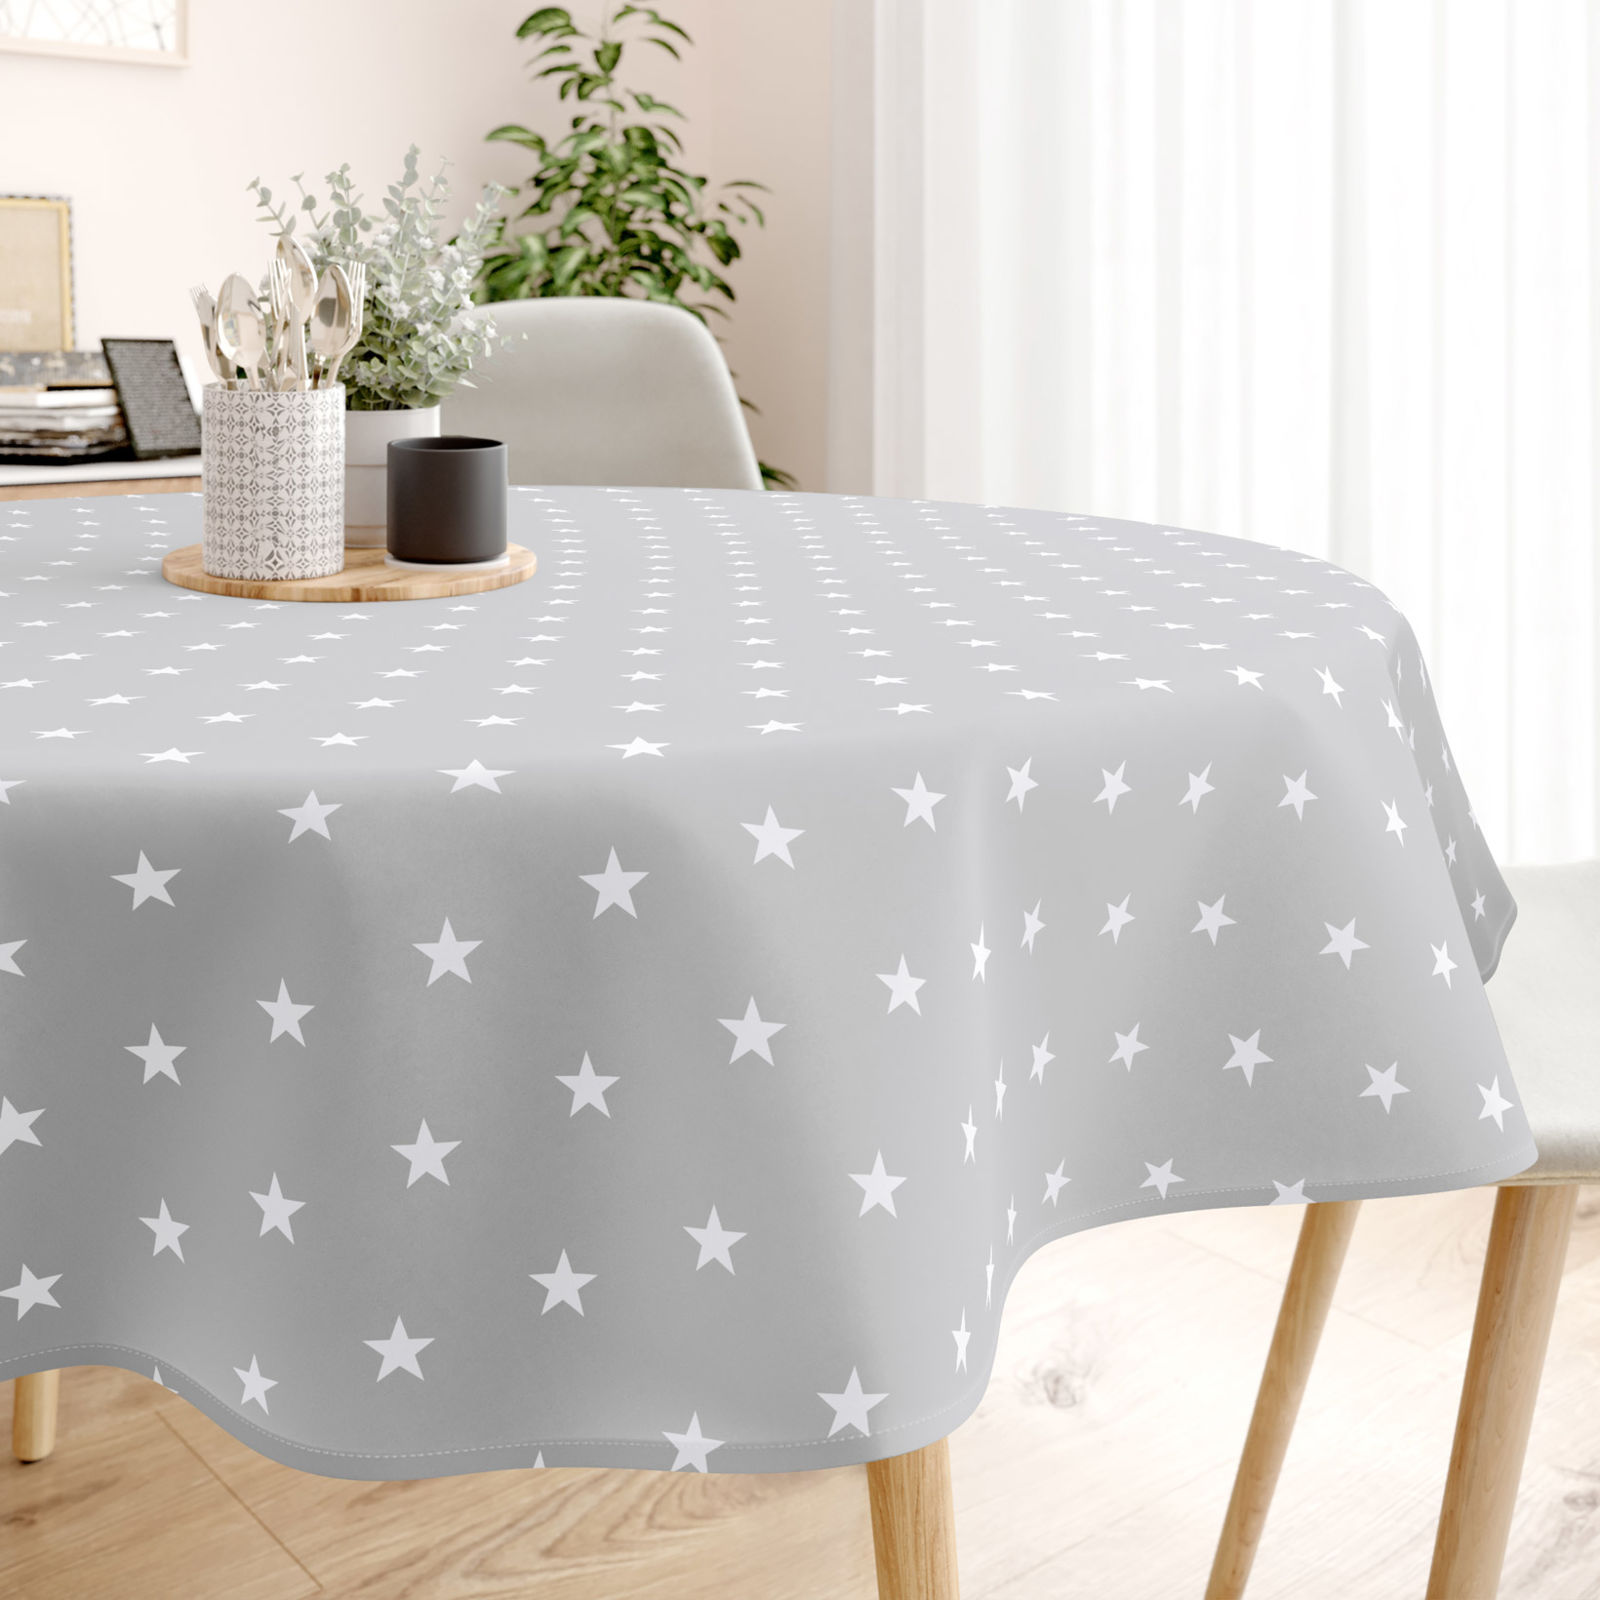 Pamut asztalterítő - fehér csillagok világosszürke alapon - kör alakú